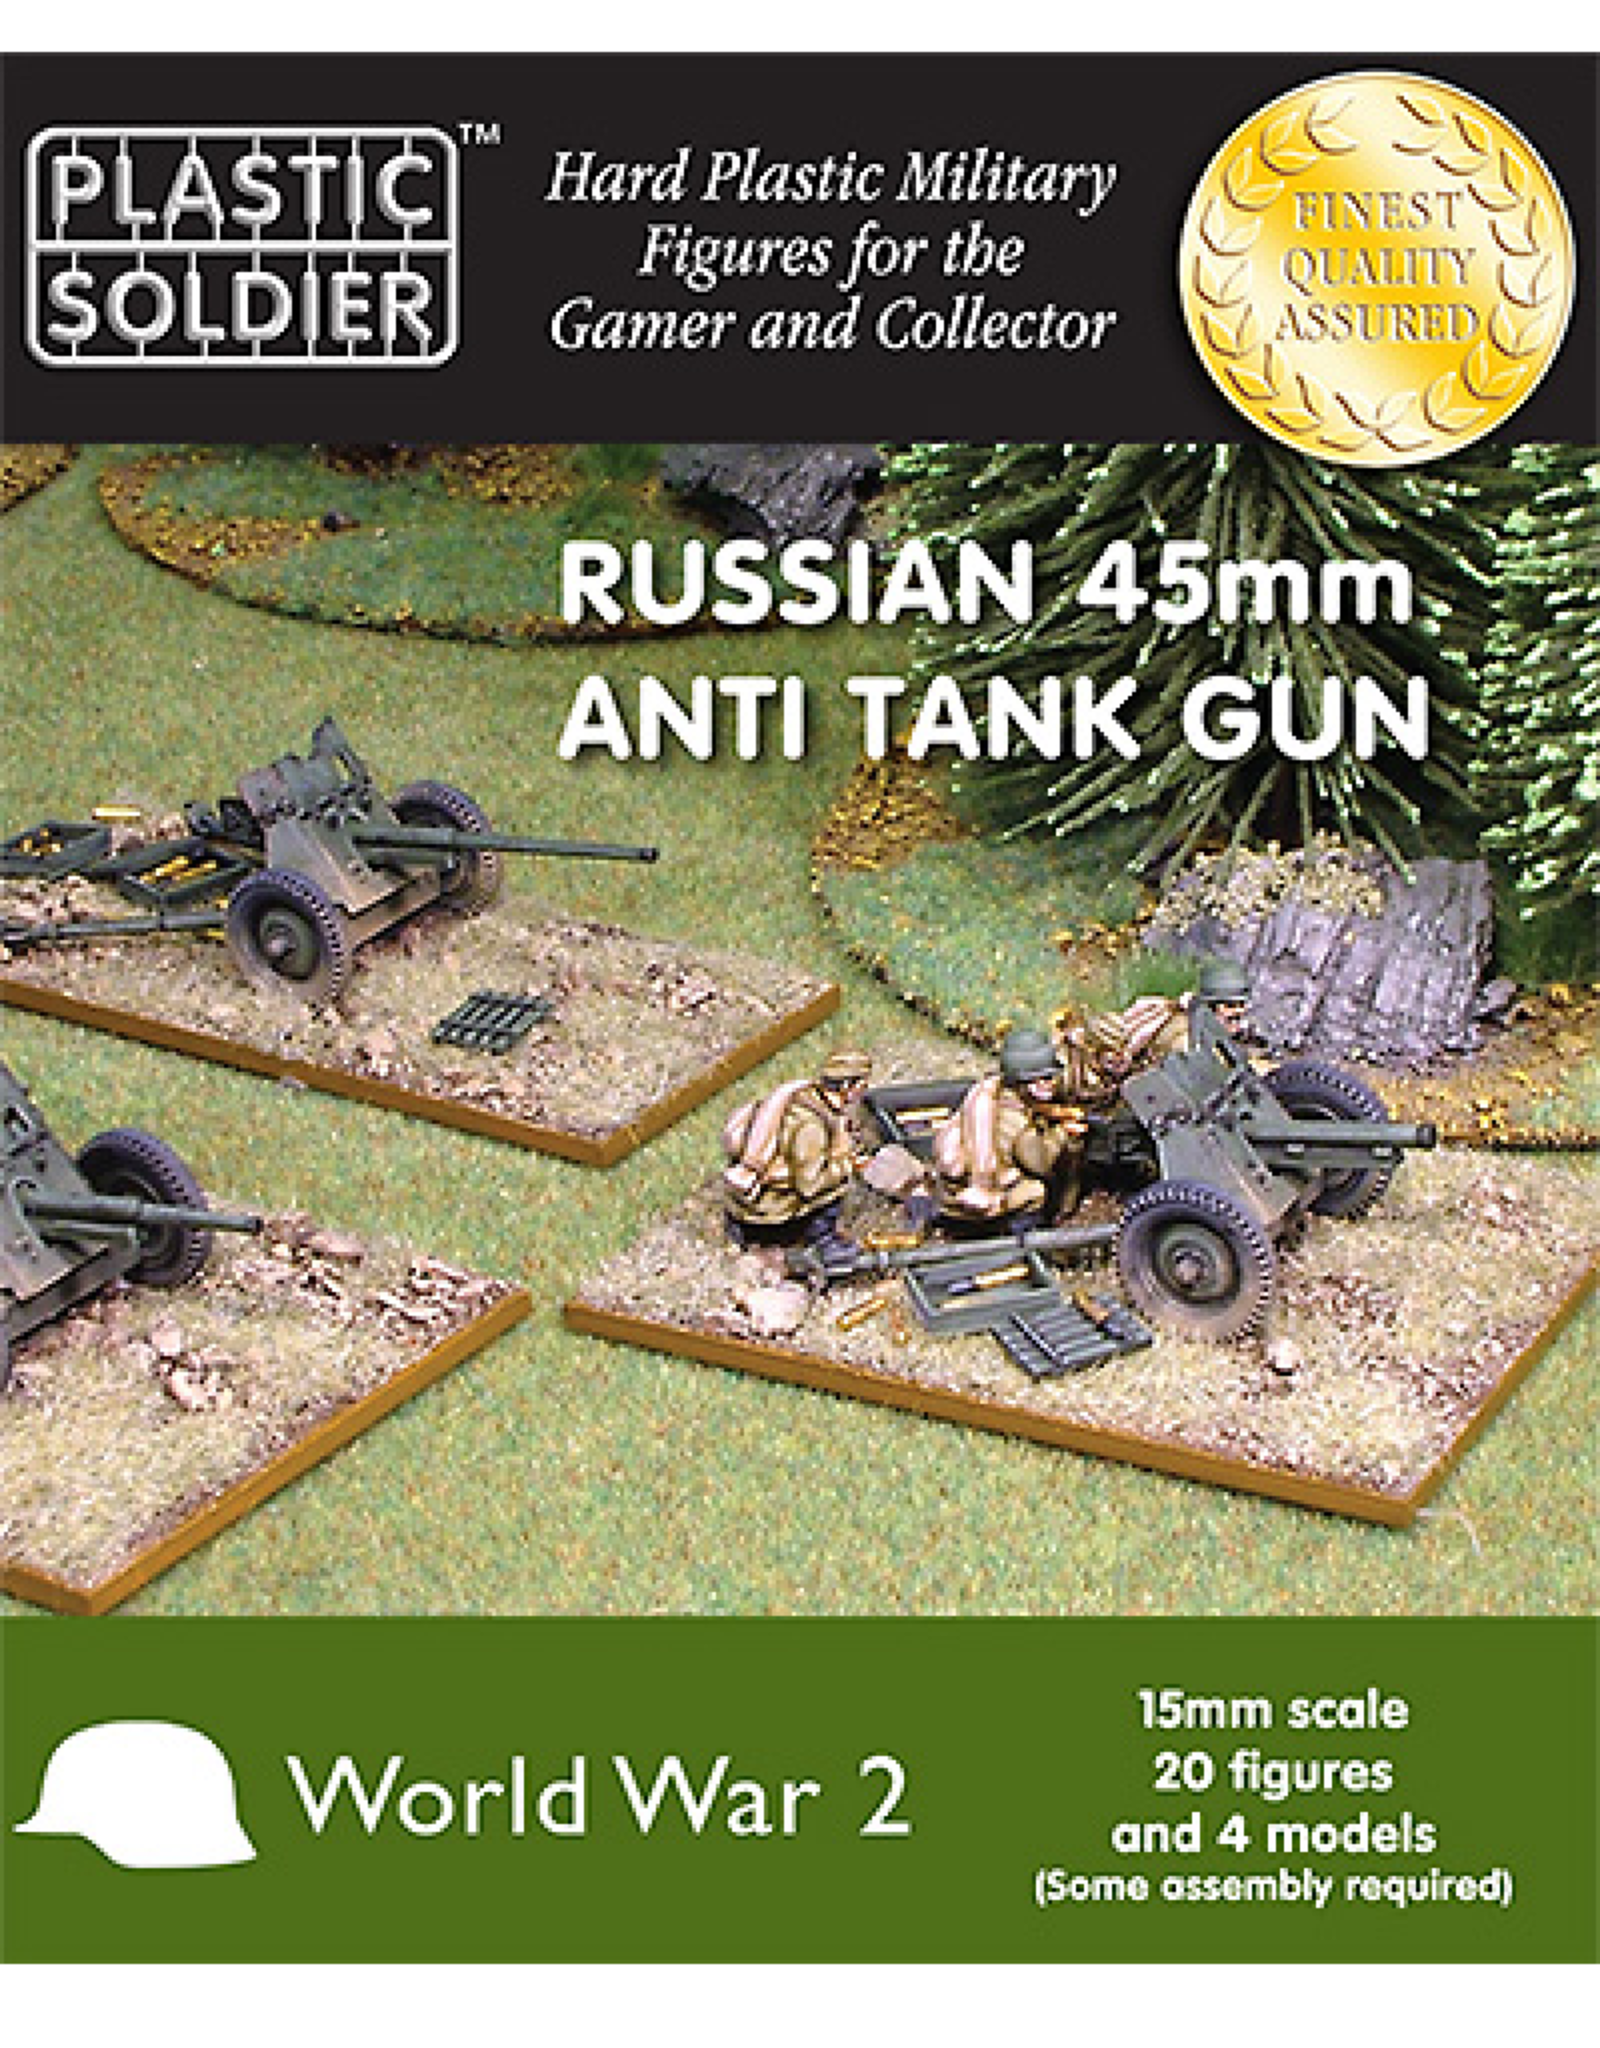 Plastic Soldier Company Russian 45mm anti tank gun